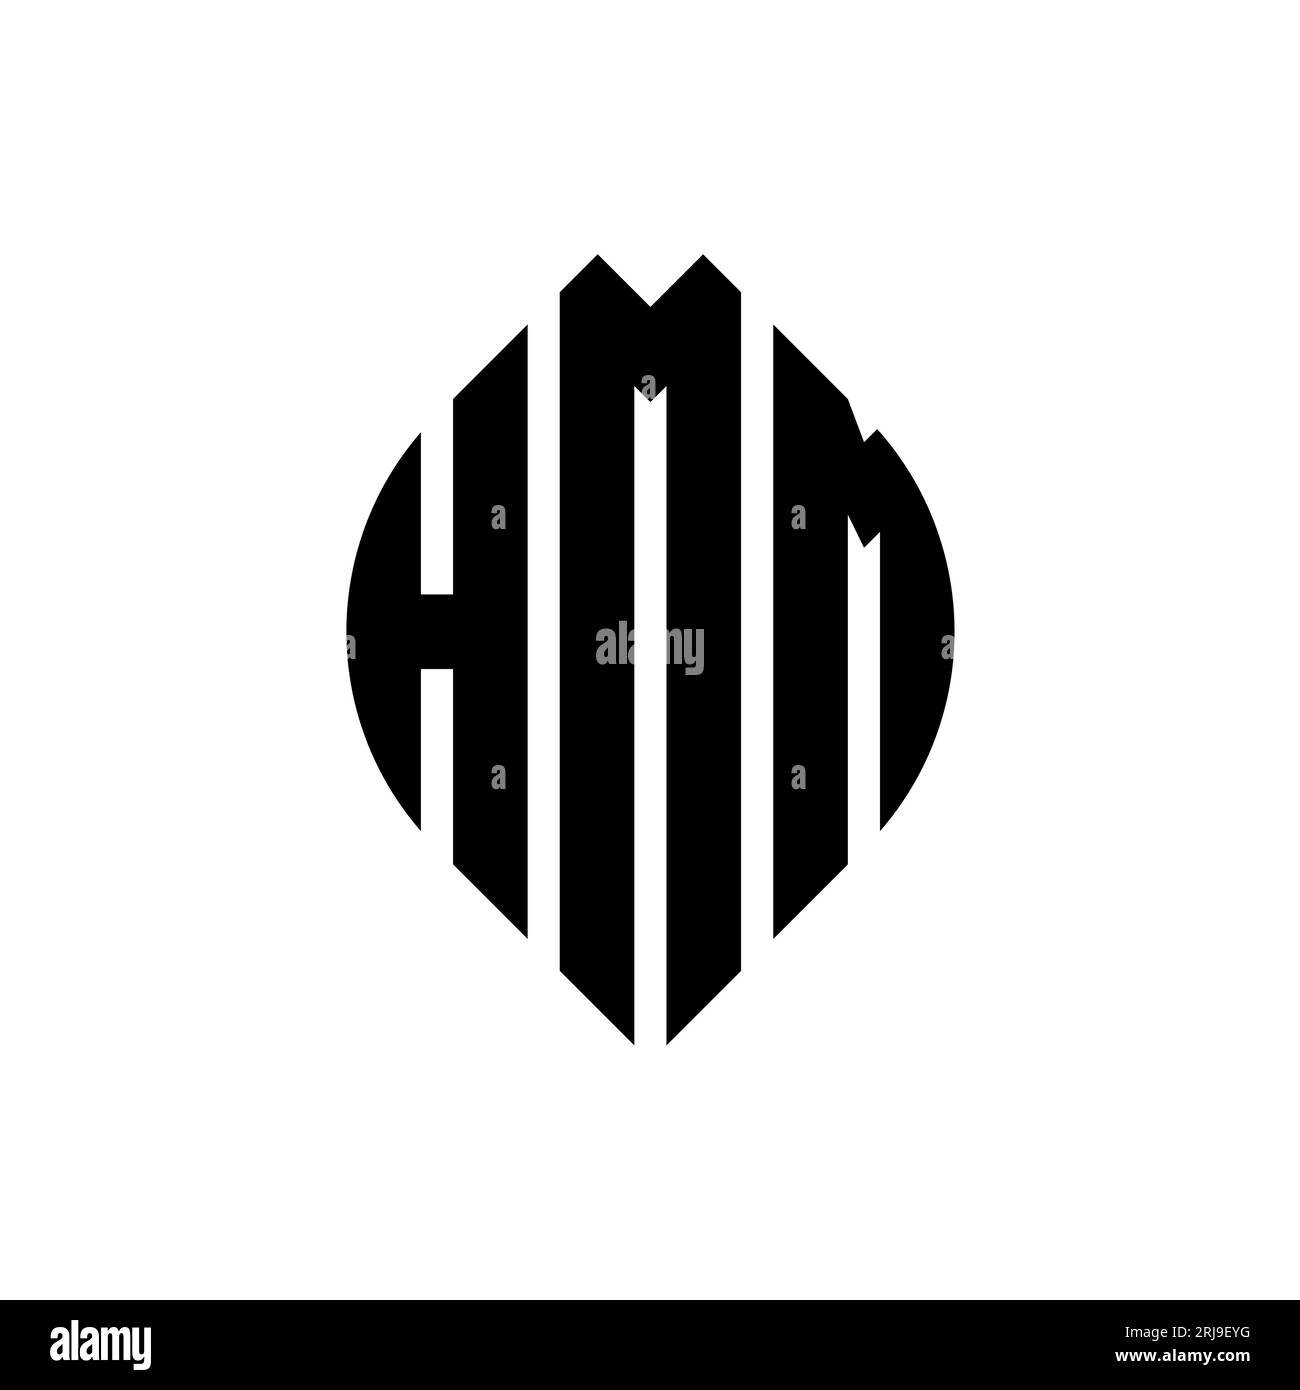 HMM kreisförmiges Logo mit Kreis- und Ellipsenform. HMM-Ellipsenbuchstaben im typografischen Stil. Die drei Initialen bilden ein kreisförmiges Logo. HMM CI Stock Vektor